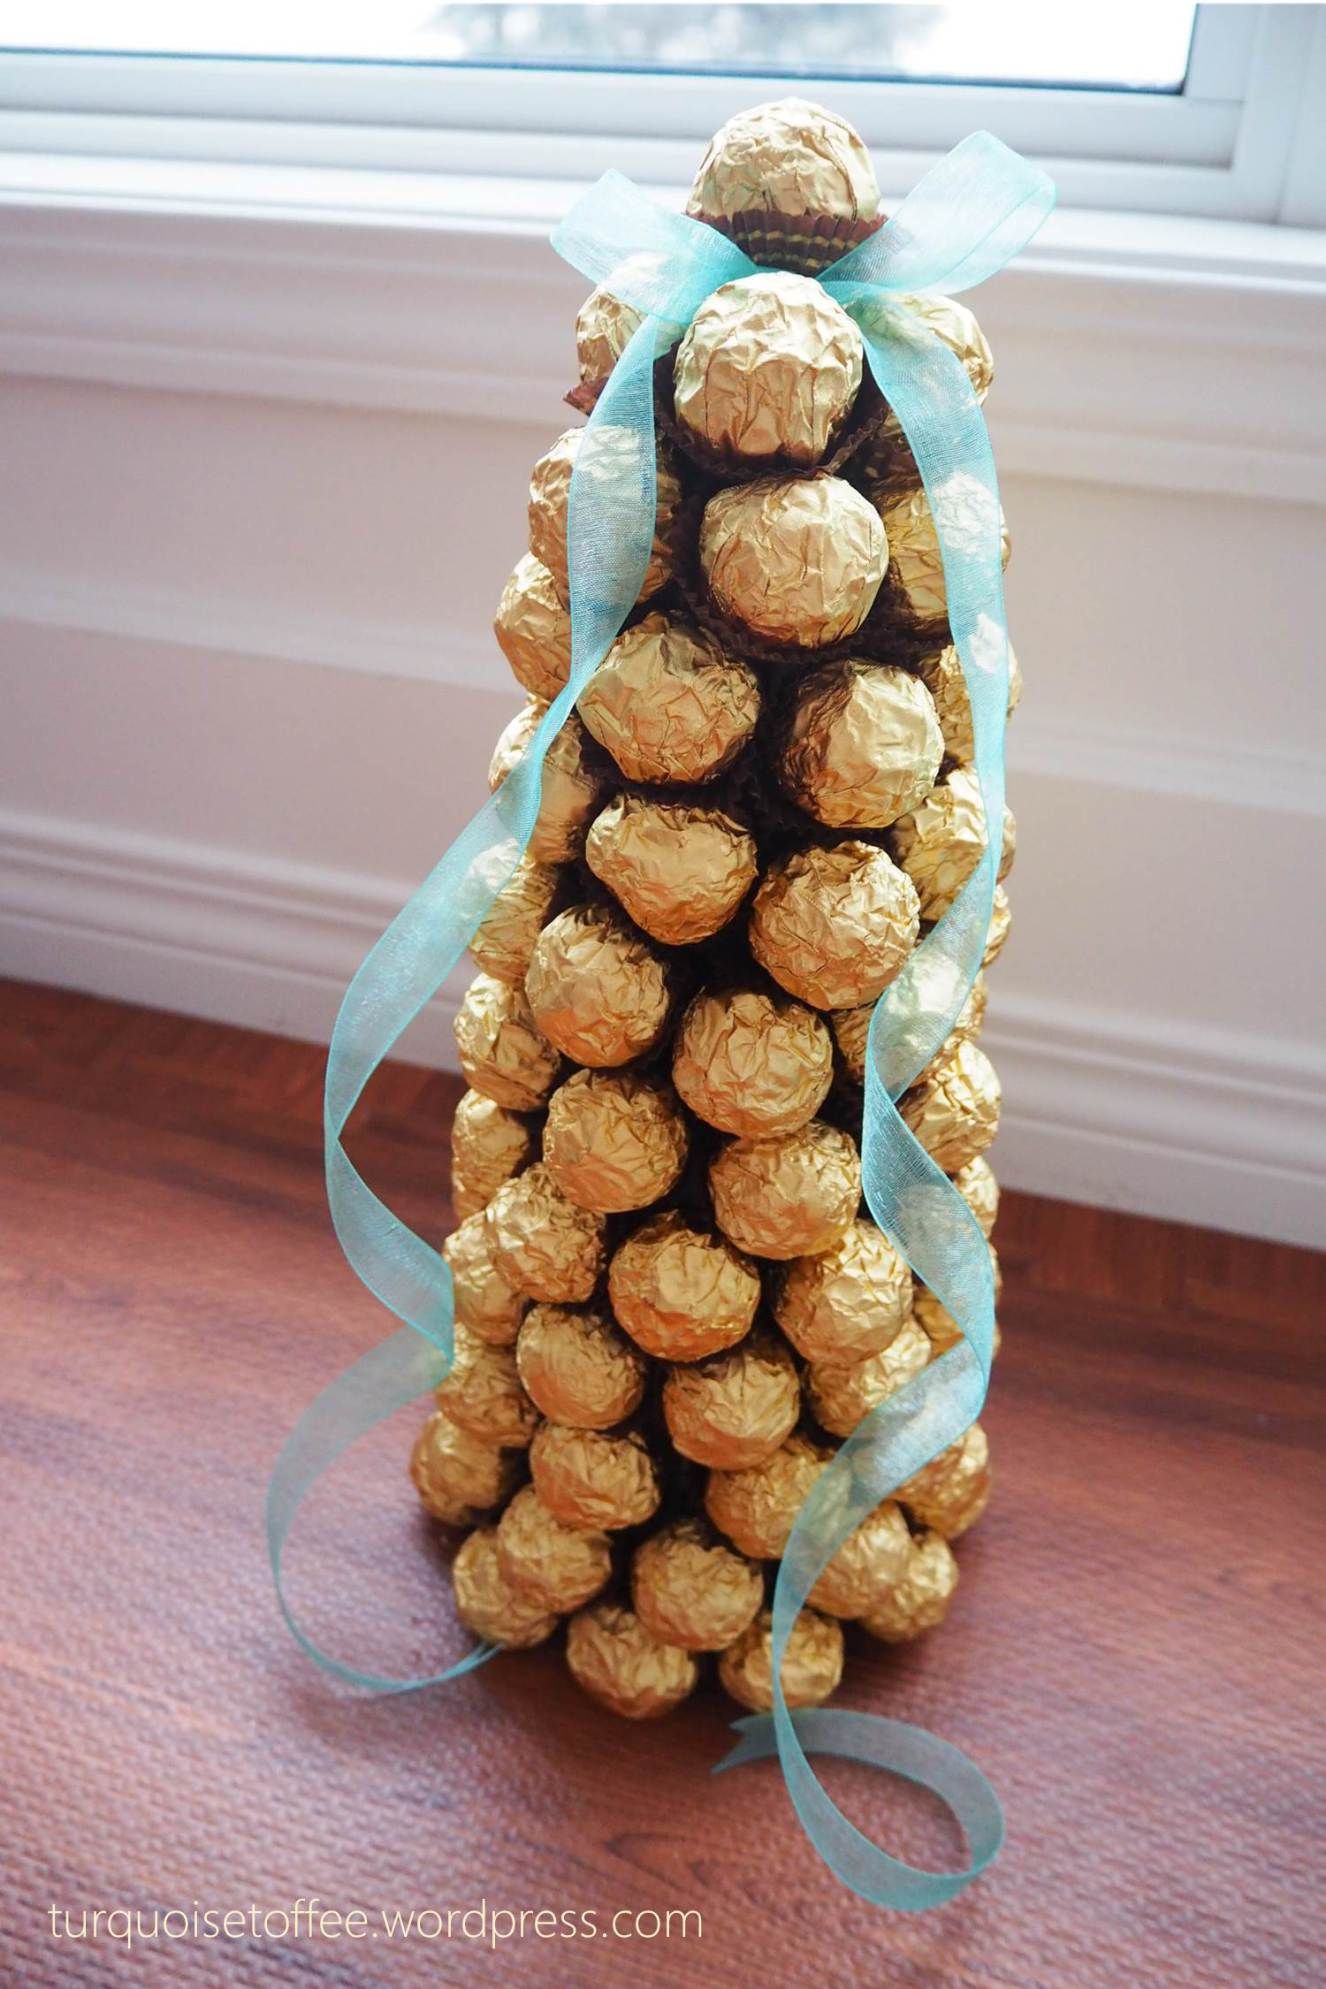 árbol de navidad hecho de caramelos de chocolate, regalo amigo invisible hecho a mano super originales 